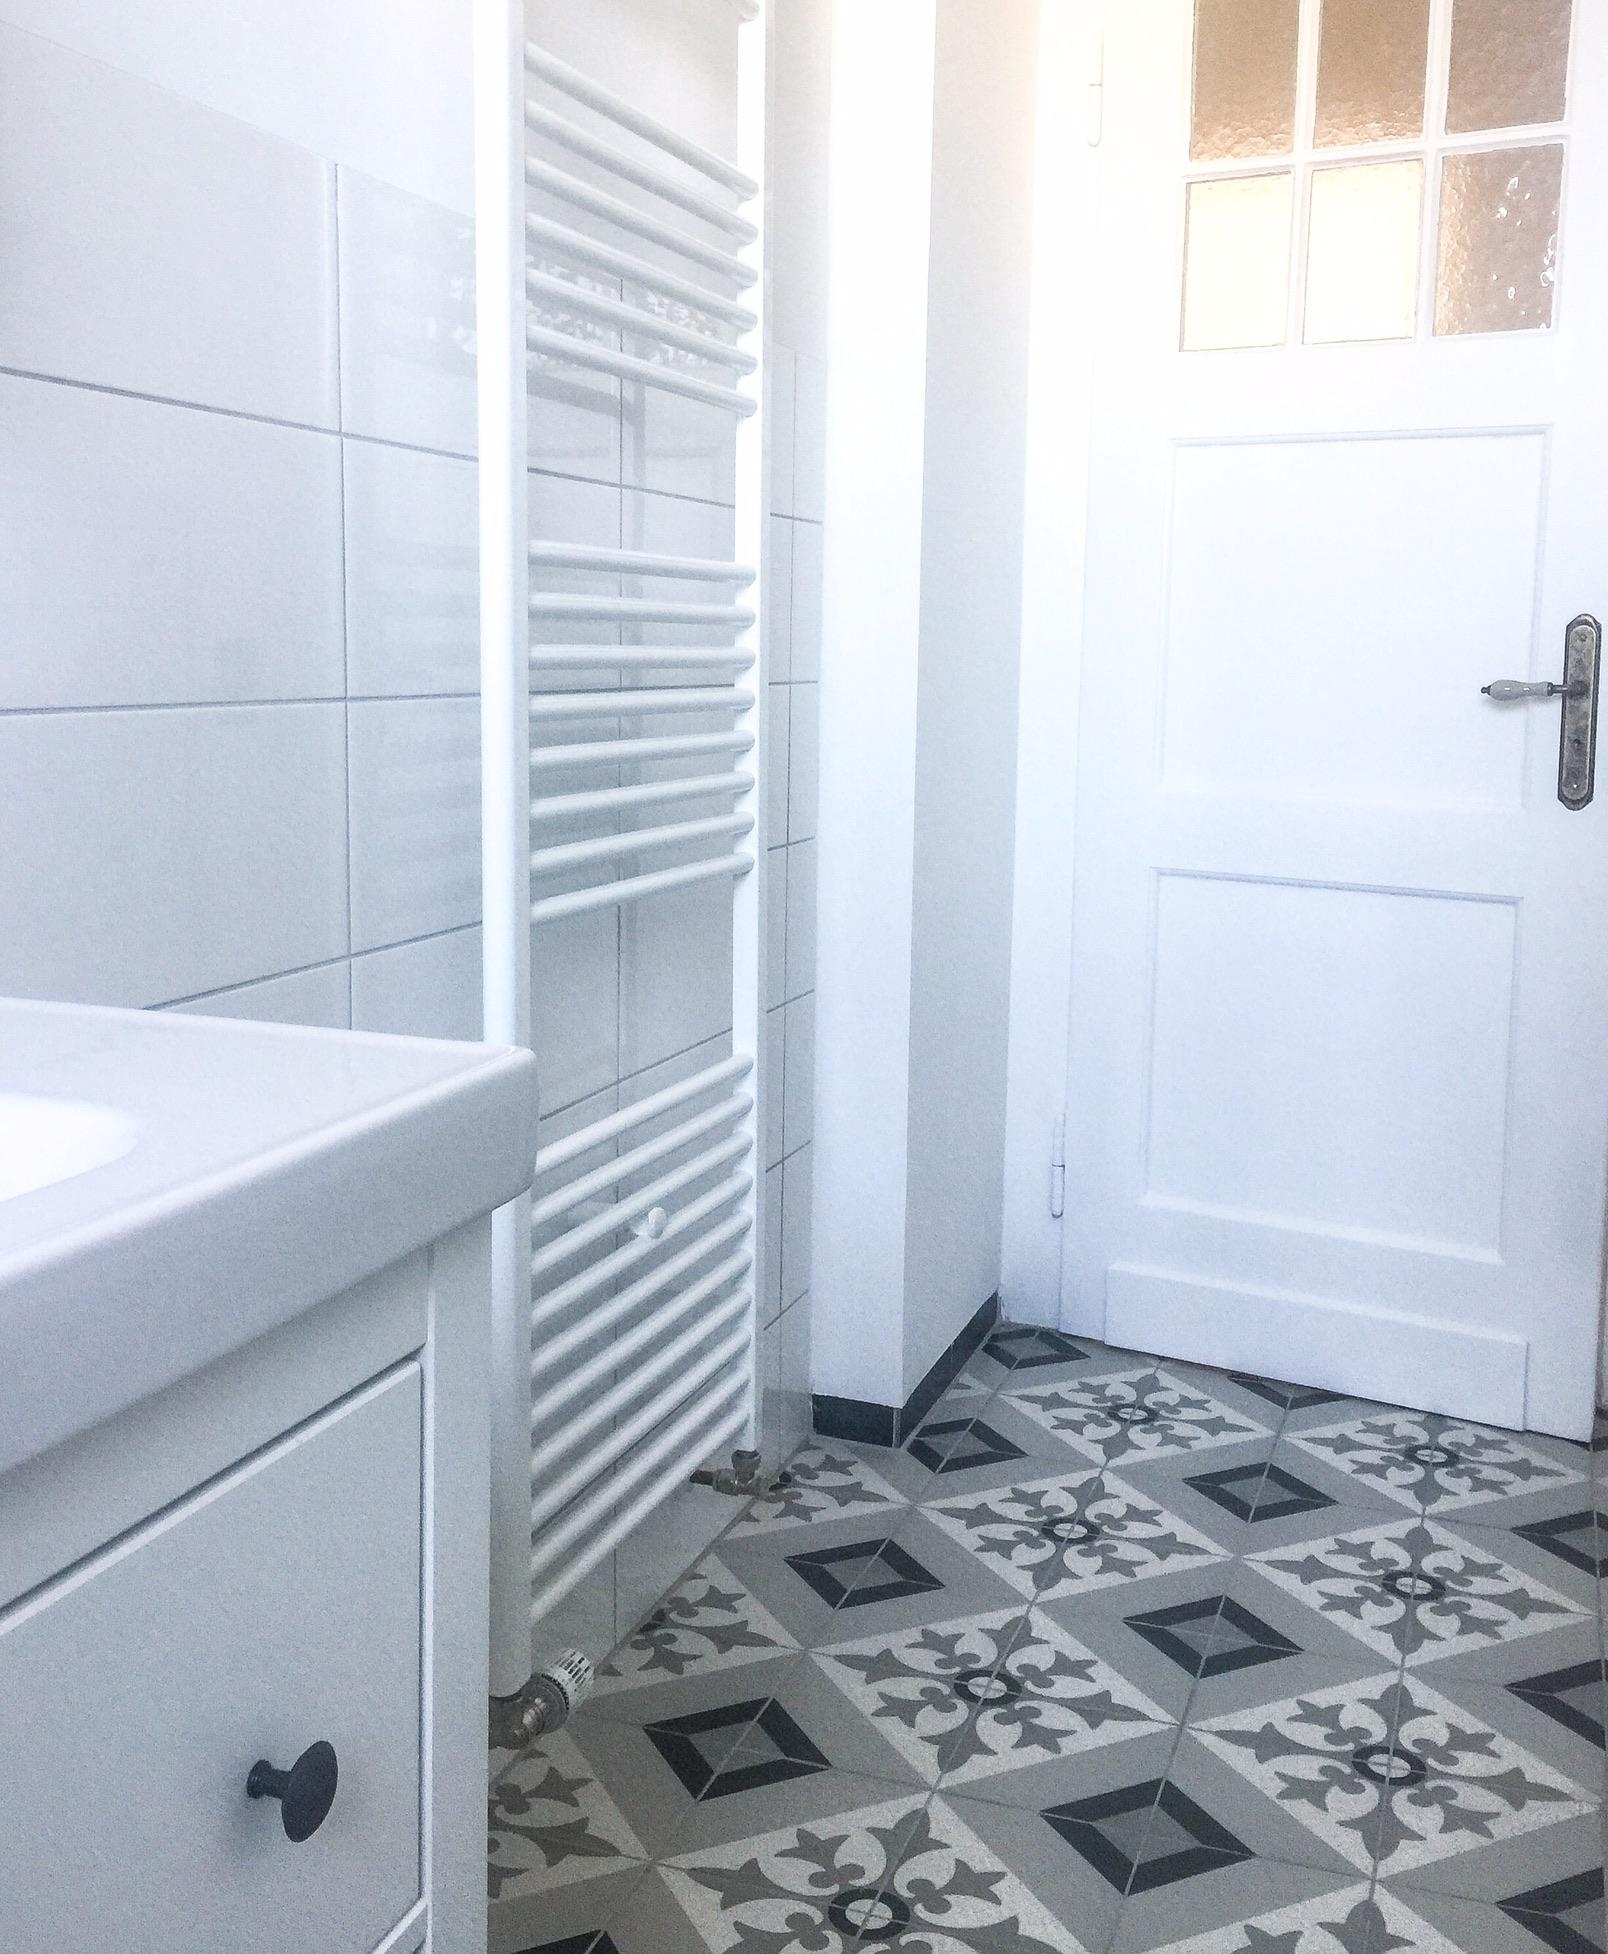 #bad #vintage #altbau #altbauliebe #fliesen #tiles #retro #bathroom #altbautür